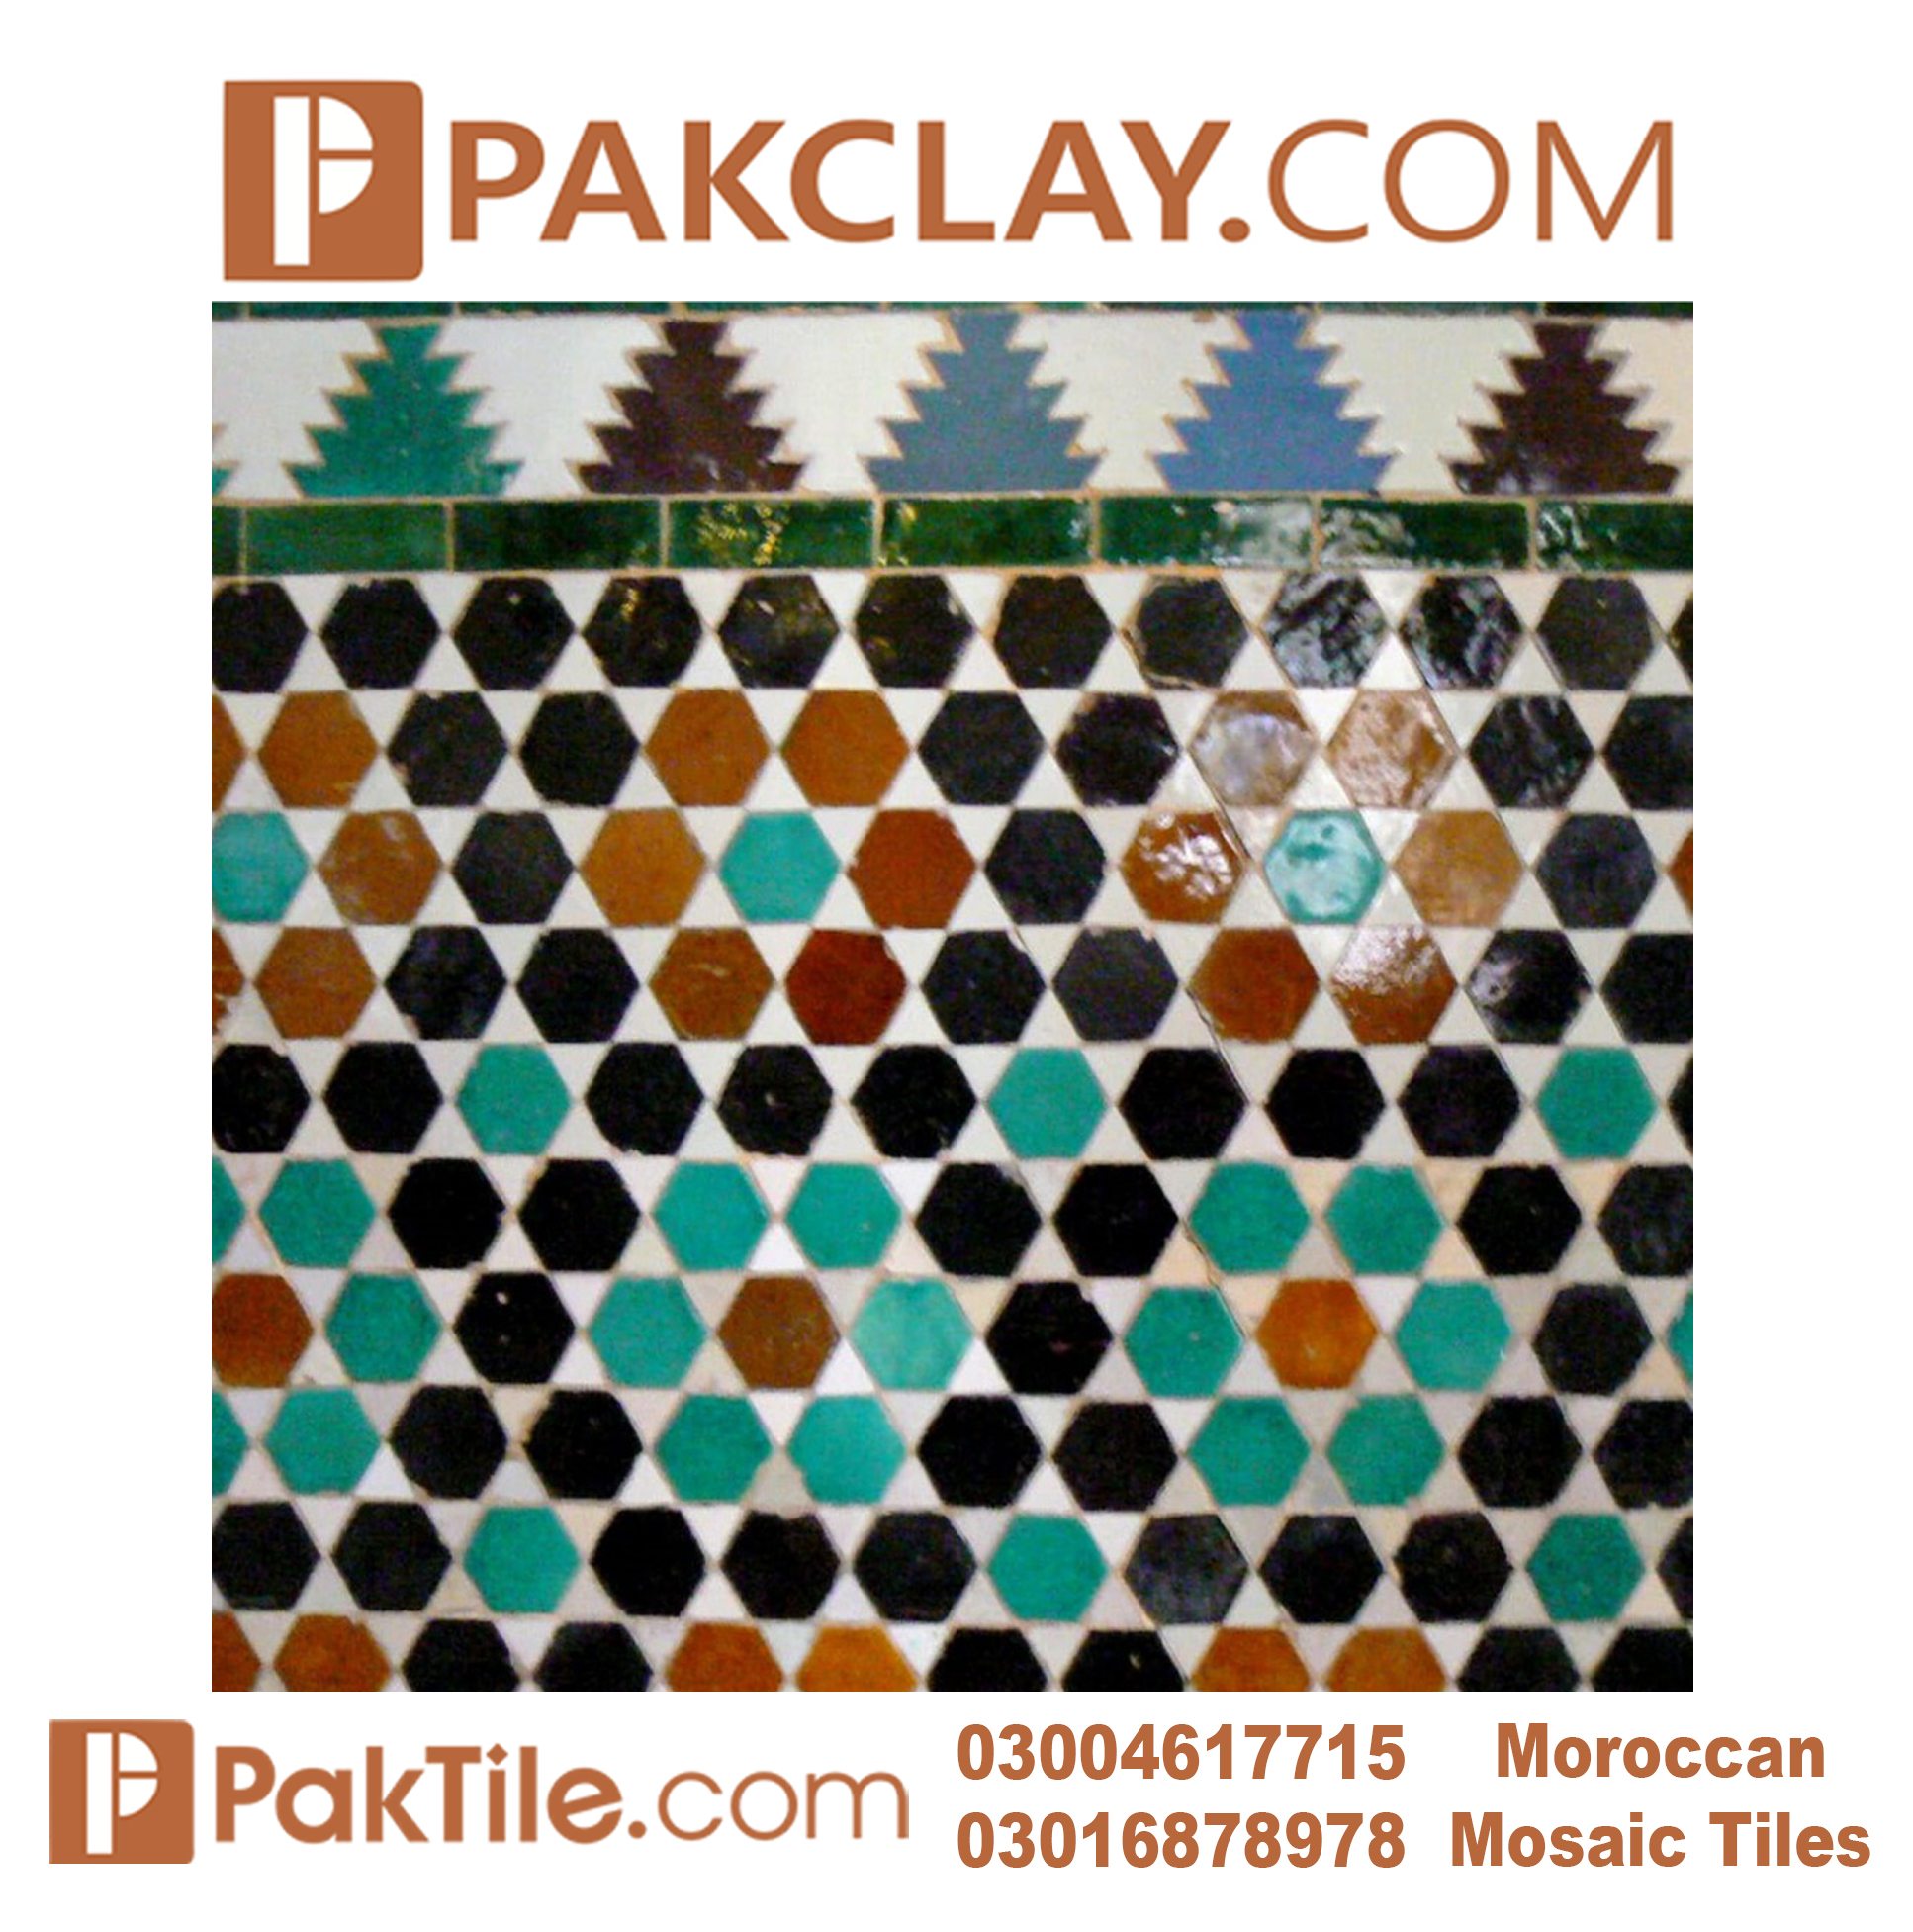 2 Mosaic Tiles Price in Karachi.